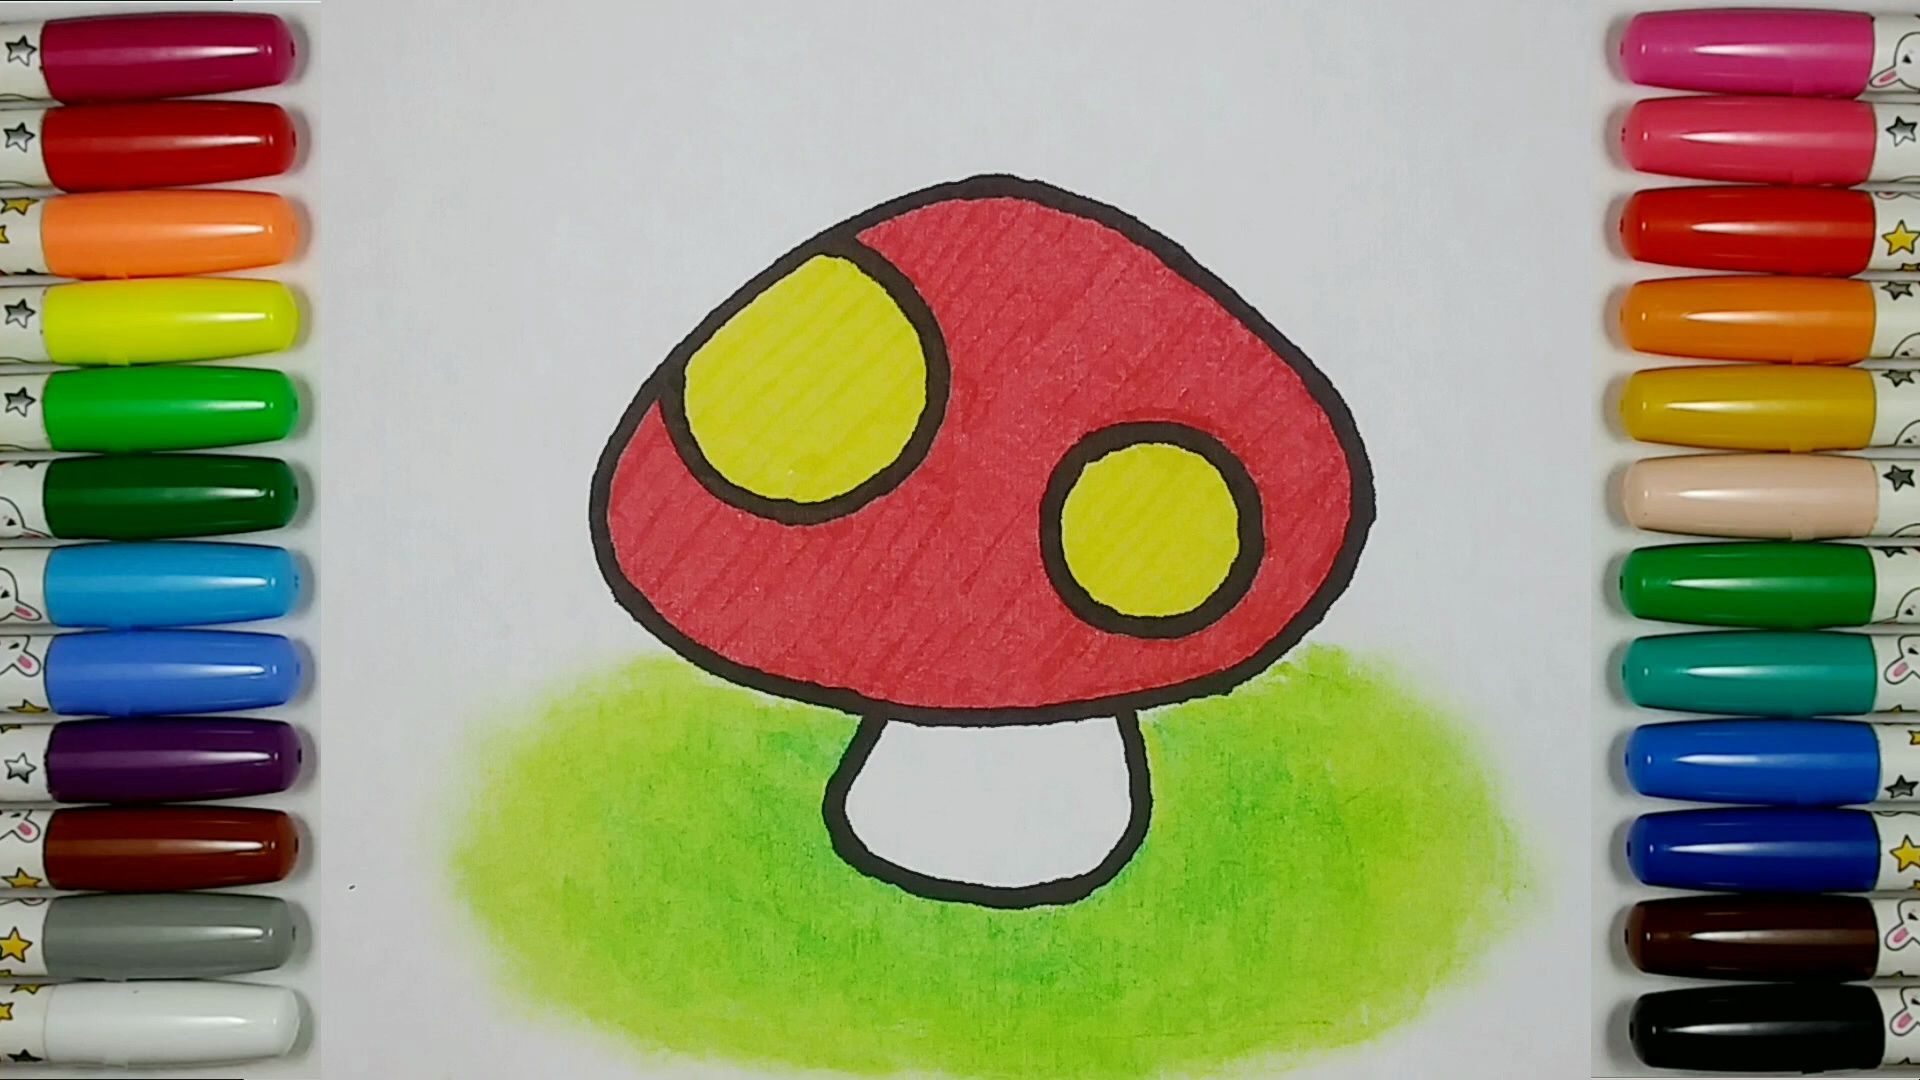 【儿童简笔画教程】画一个可爱的小蘑菇:森林的精灵!